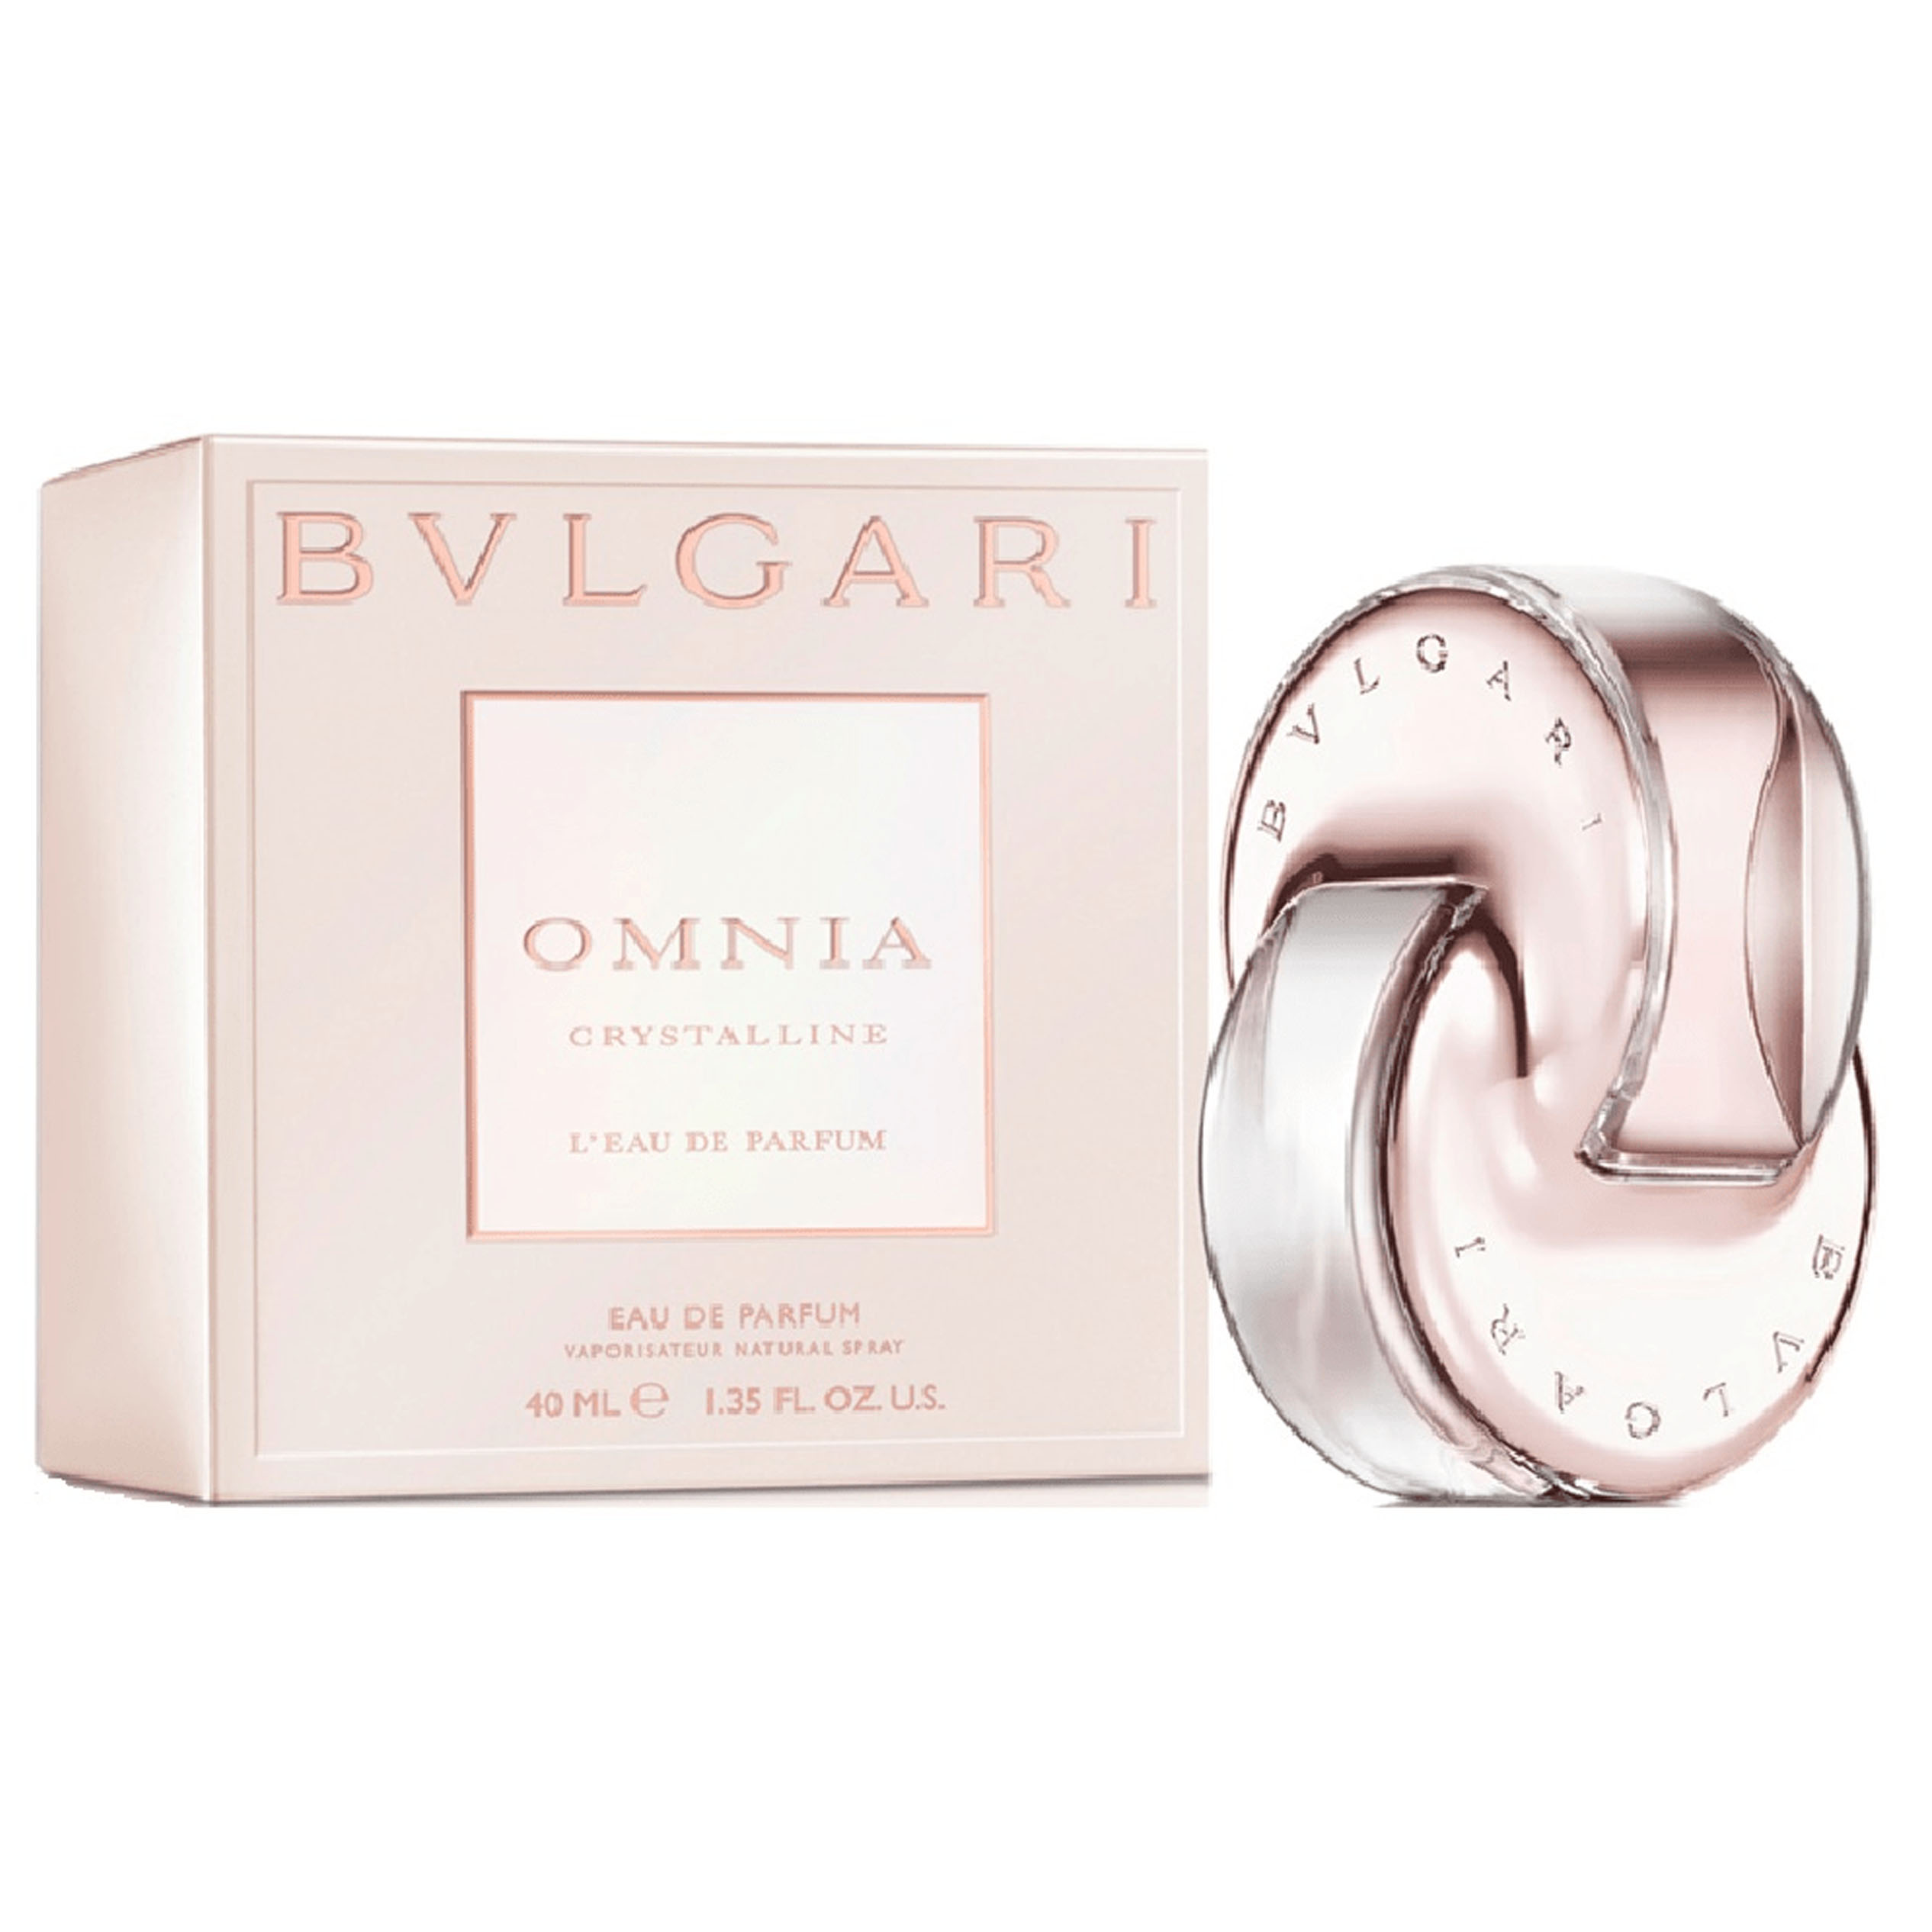 Perfume Omnia Crystalline Eau De Parfum Bvlgari    (Replica Con Fragancia Importada)- Mujer